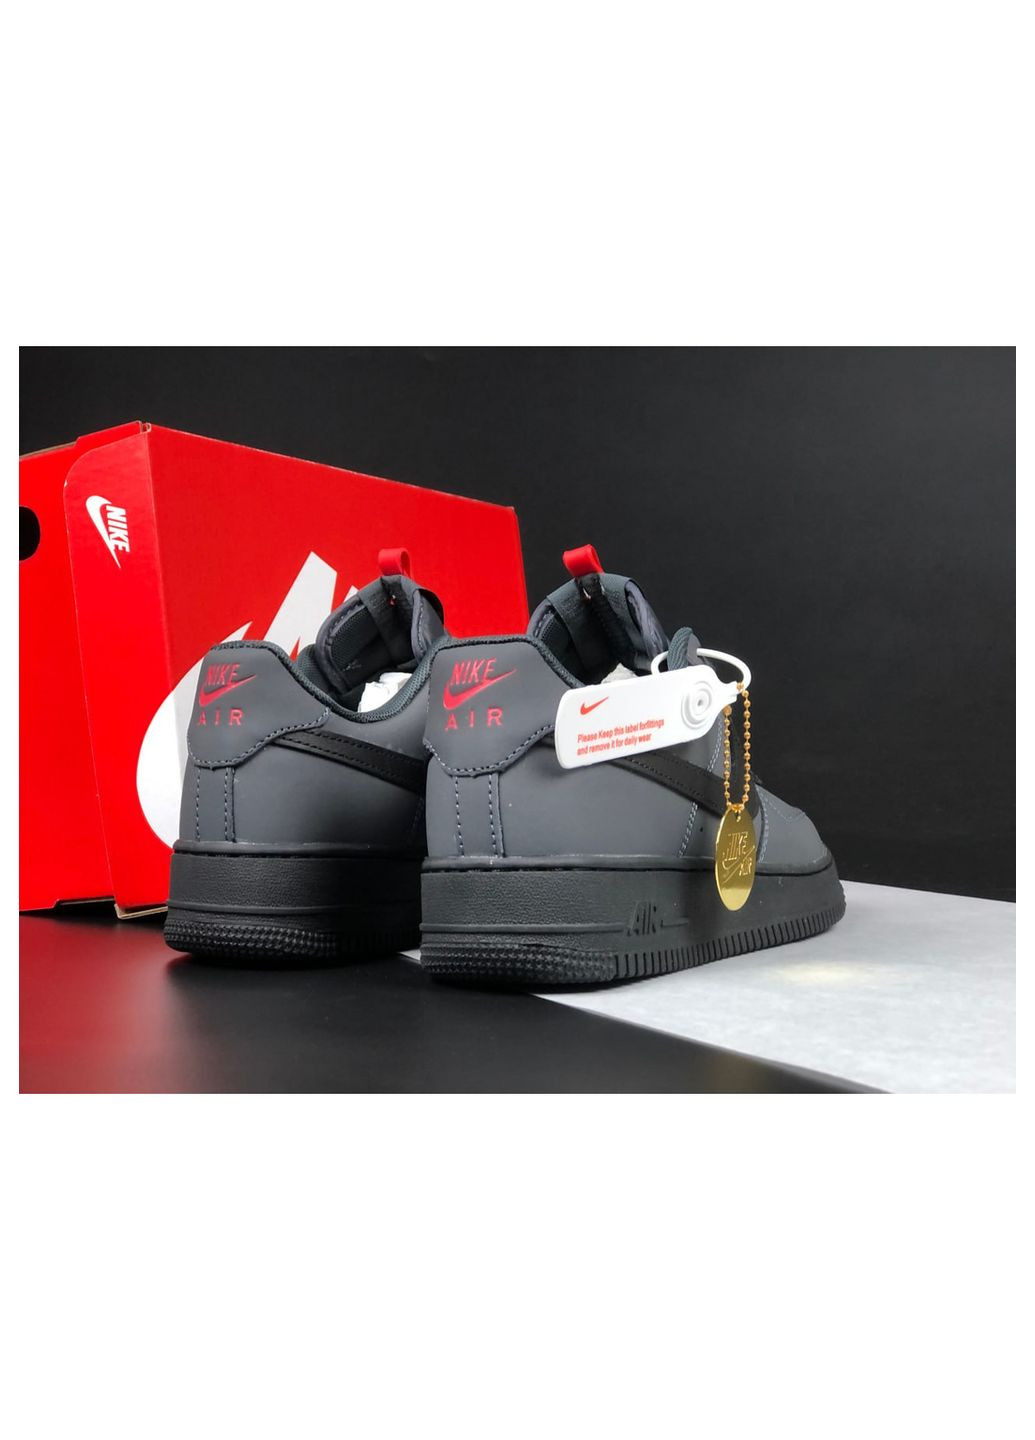 Темно-серые демисезонные кроссовки мужские limited, вьетнам Nike Air Force 1